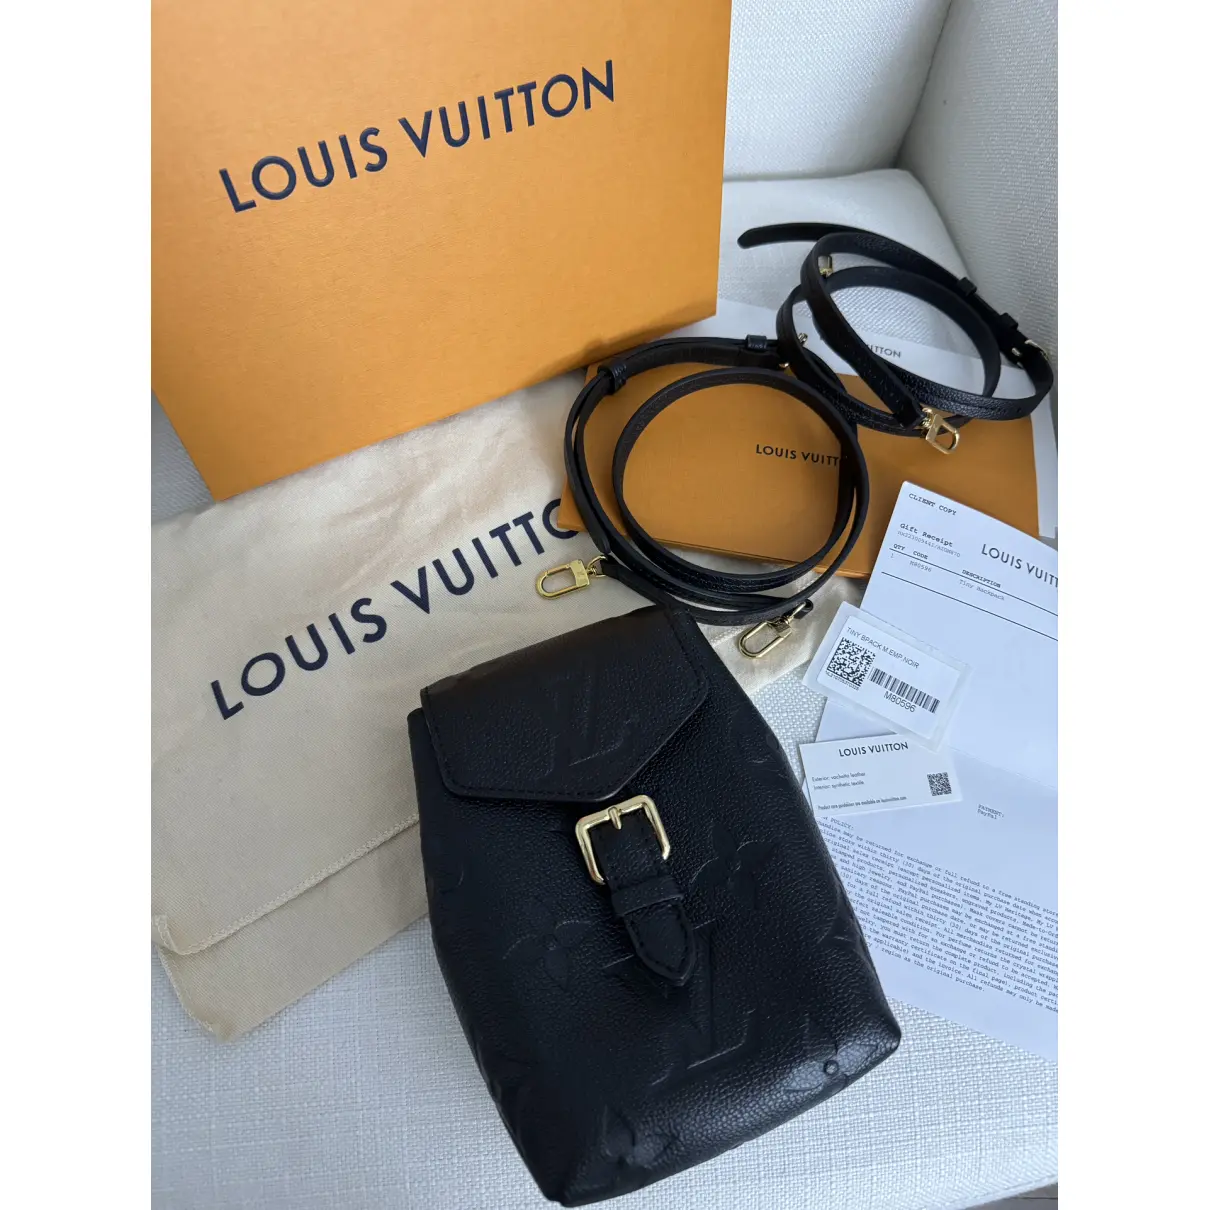 Buy Louis Vuitton Leather mini bag online